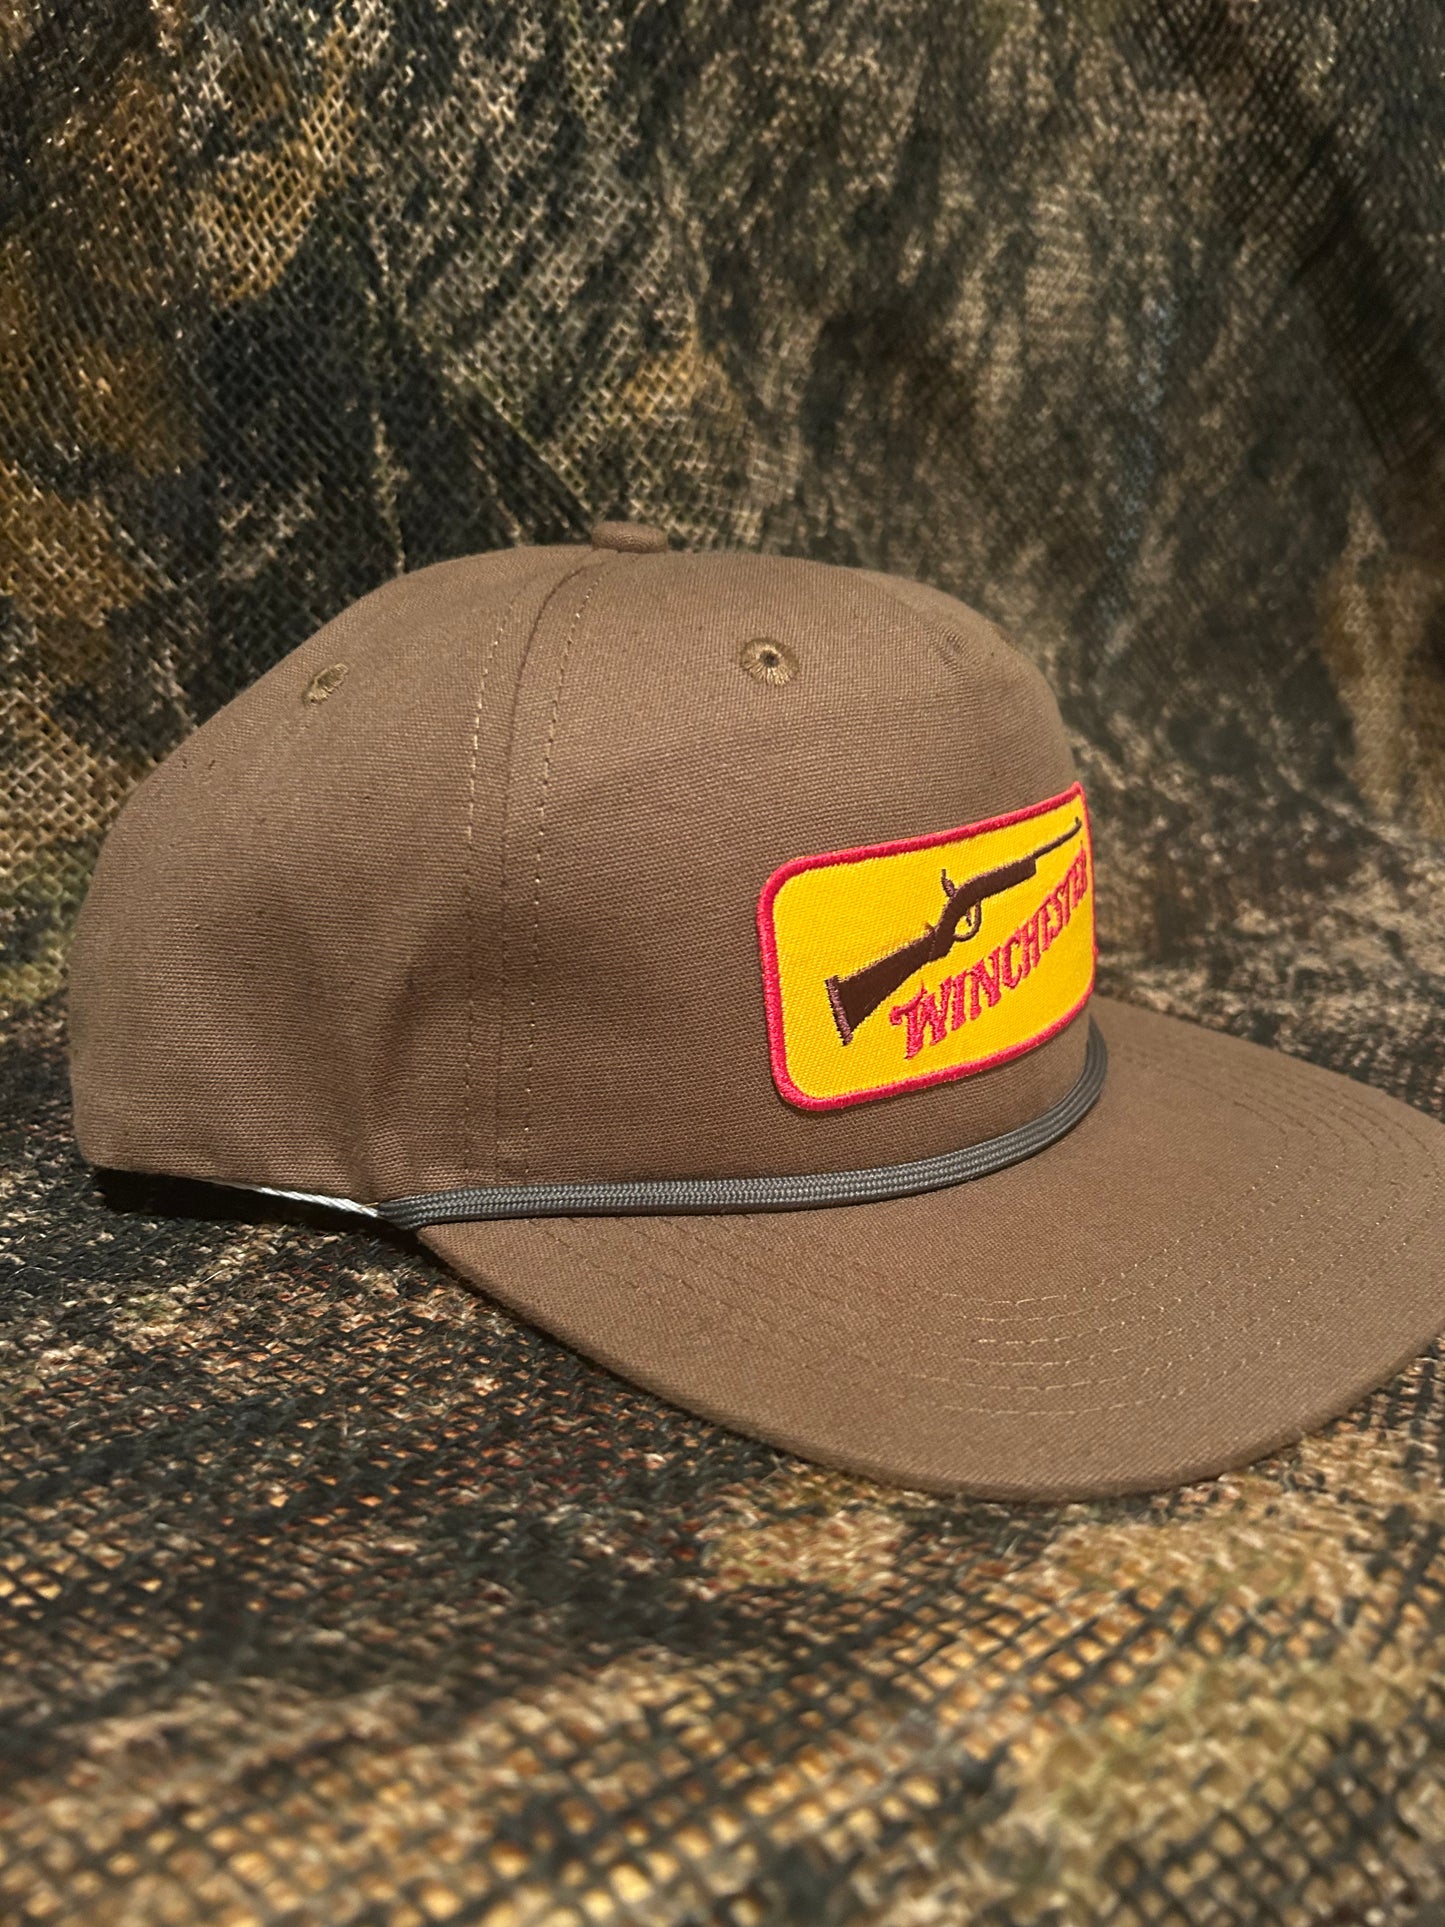 Winchester retro tobacco brown ropebrim SnapBack hat